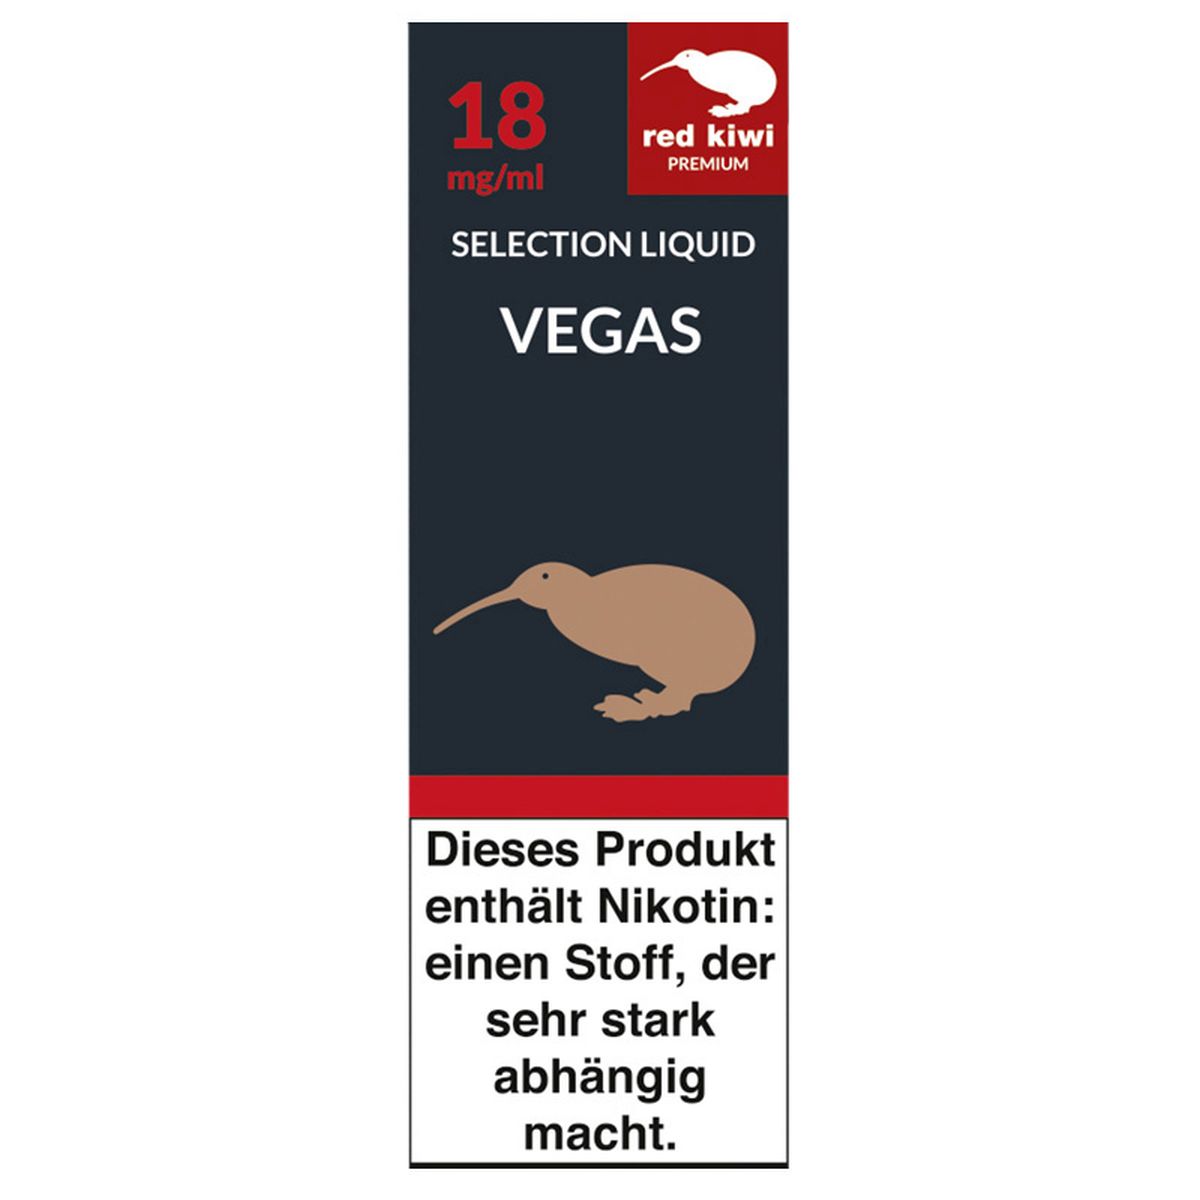 Red Kiwi Red Kiwi eLiquid Selection Vegas 18mg Nikotin/ml bei www.Tabakring.de kaufen